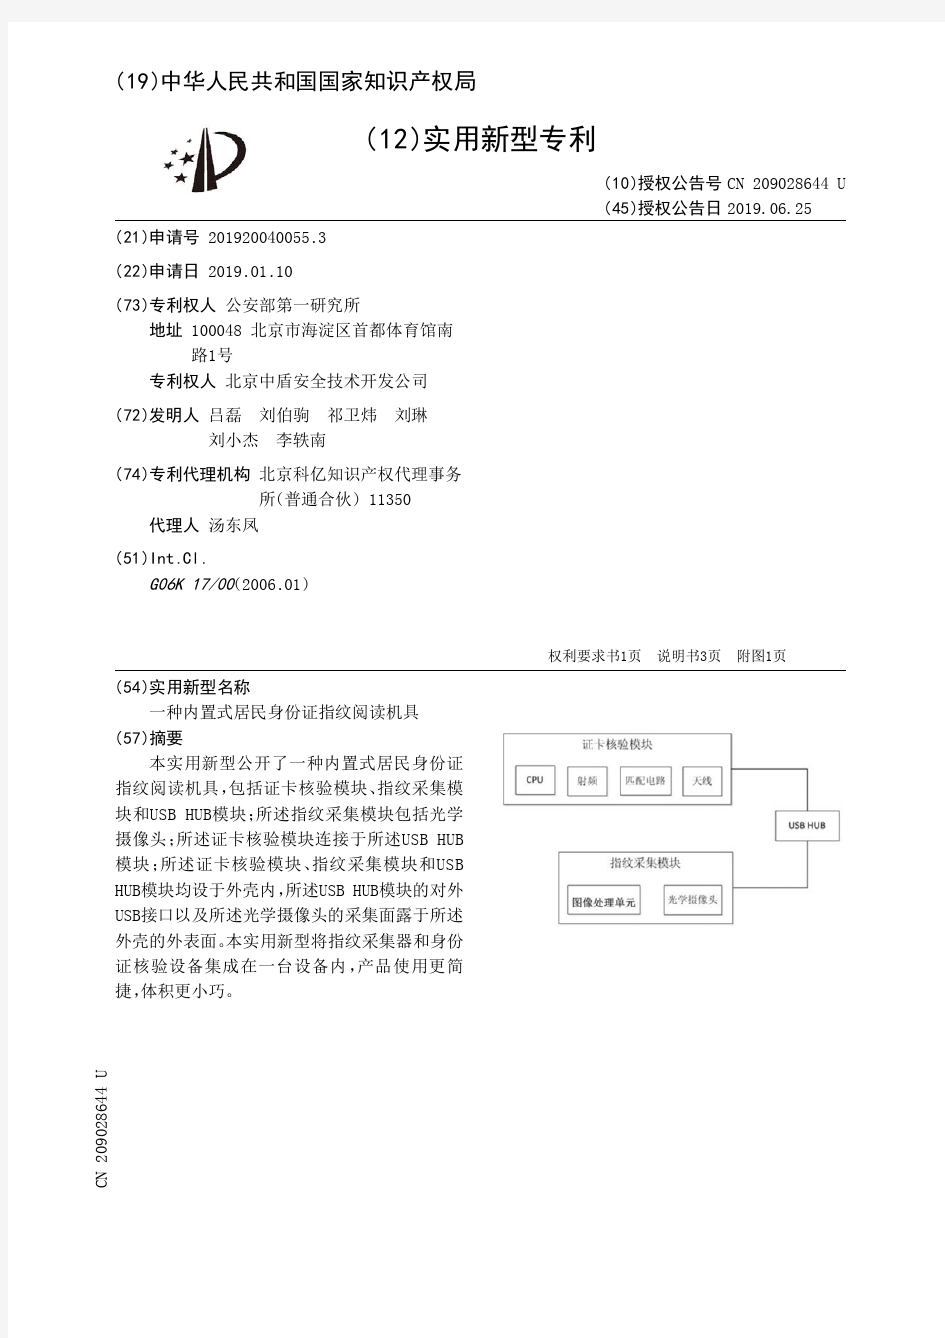 【CN209028644U】一种内置式居民身份证指纹阅读机具【专利】